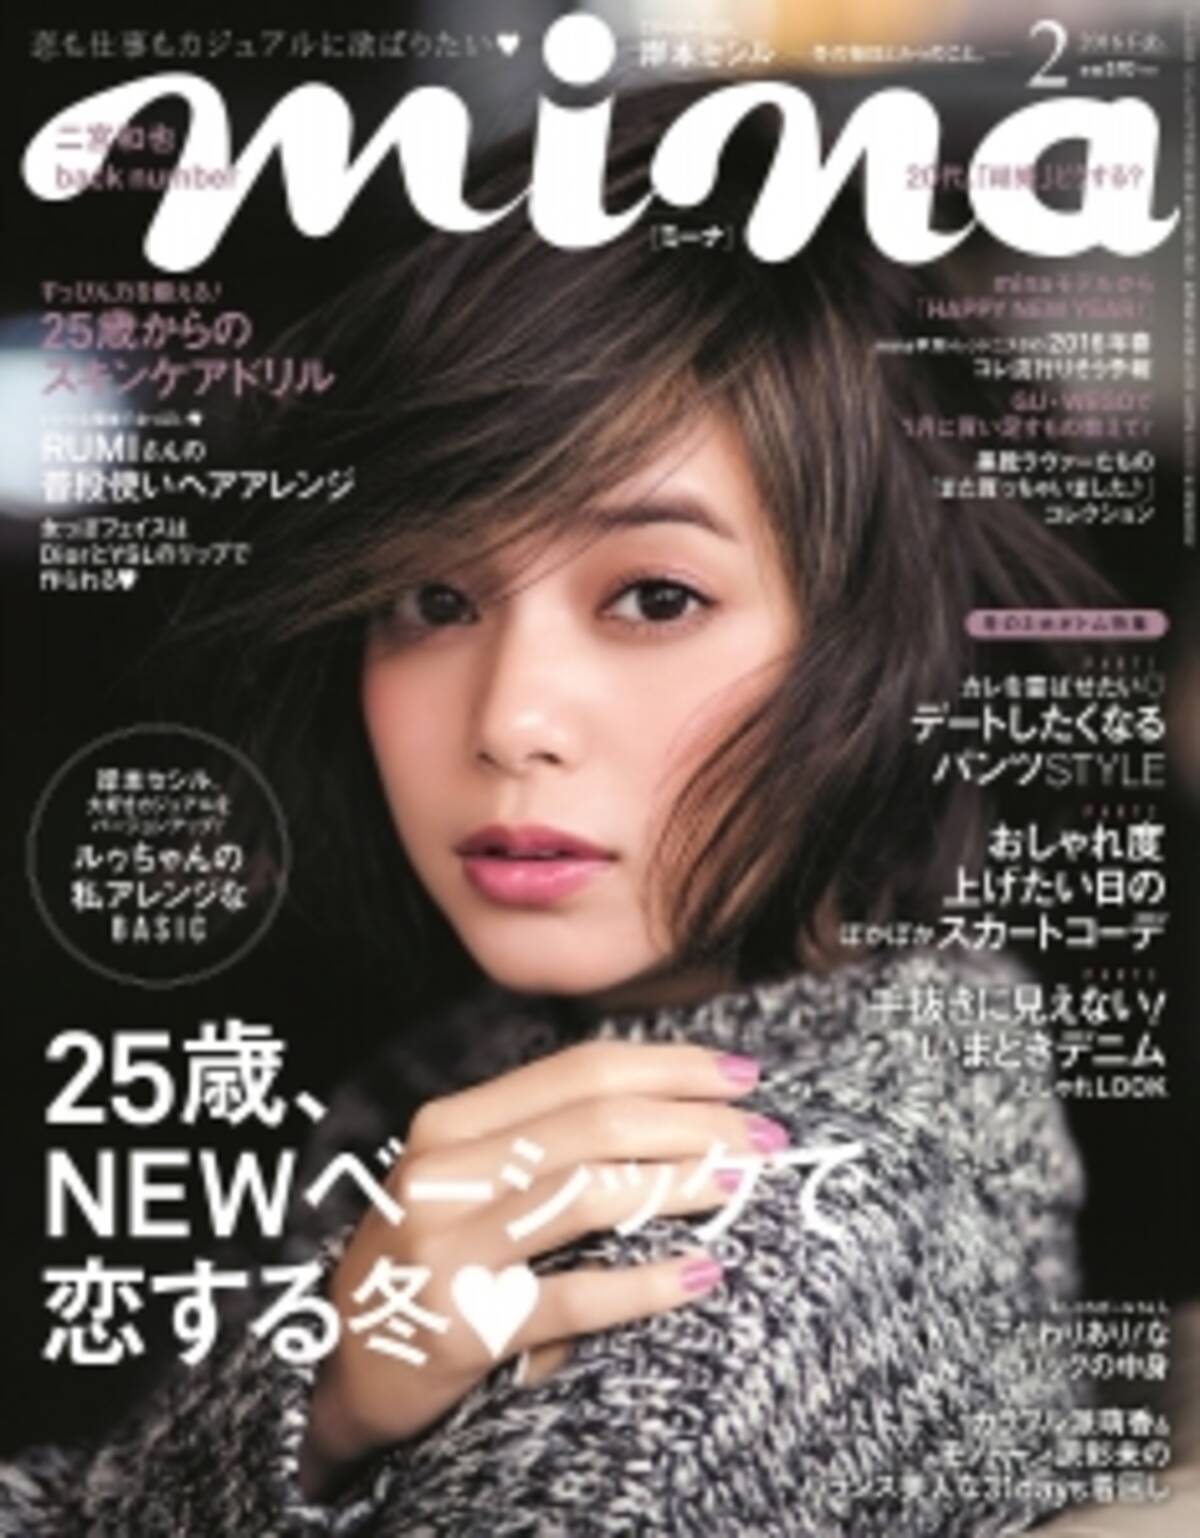 岸本セシルさん 恋も仕事も欲ばる25歳のためのファッション誌 Mina のカバーガールに初登場 15年12月18日 エキサイトニュース